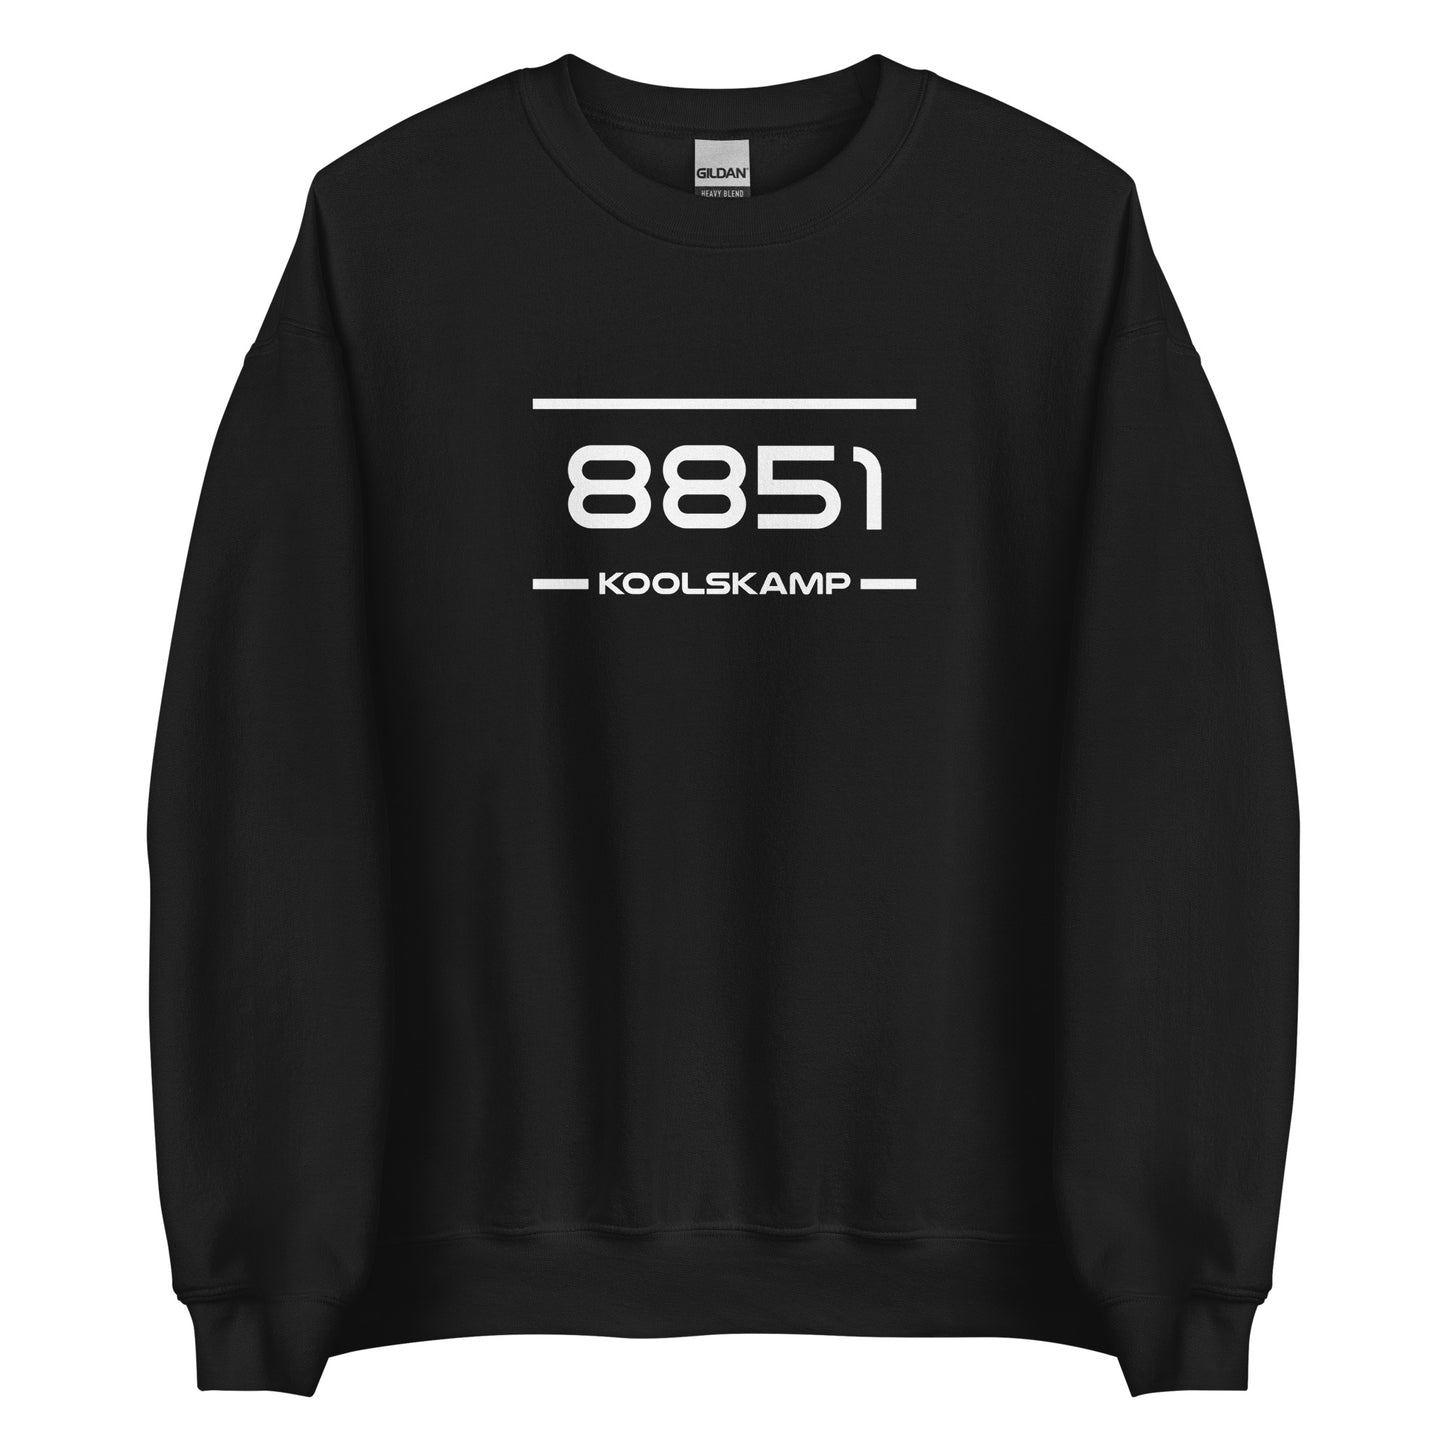 Sweater - 8851 - Koolskamp (M/V)